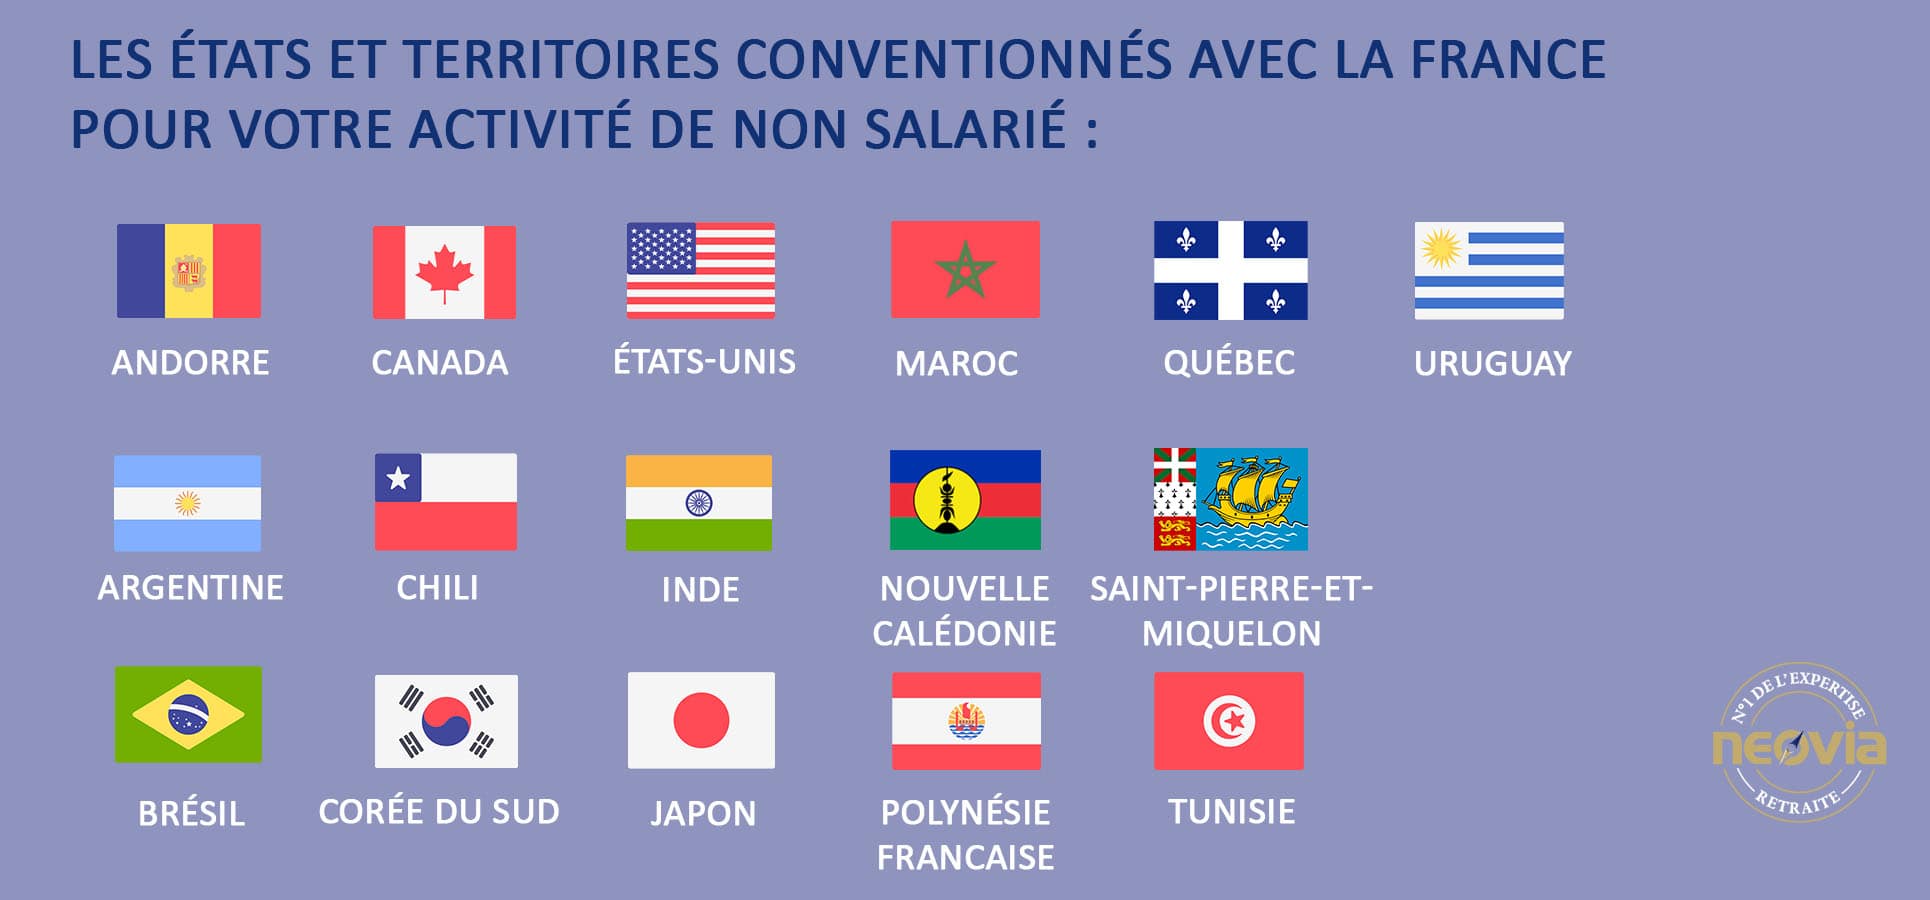 Les Etats et territoires conventionné avec la France pour votre activité de non salarié